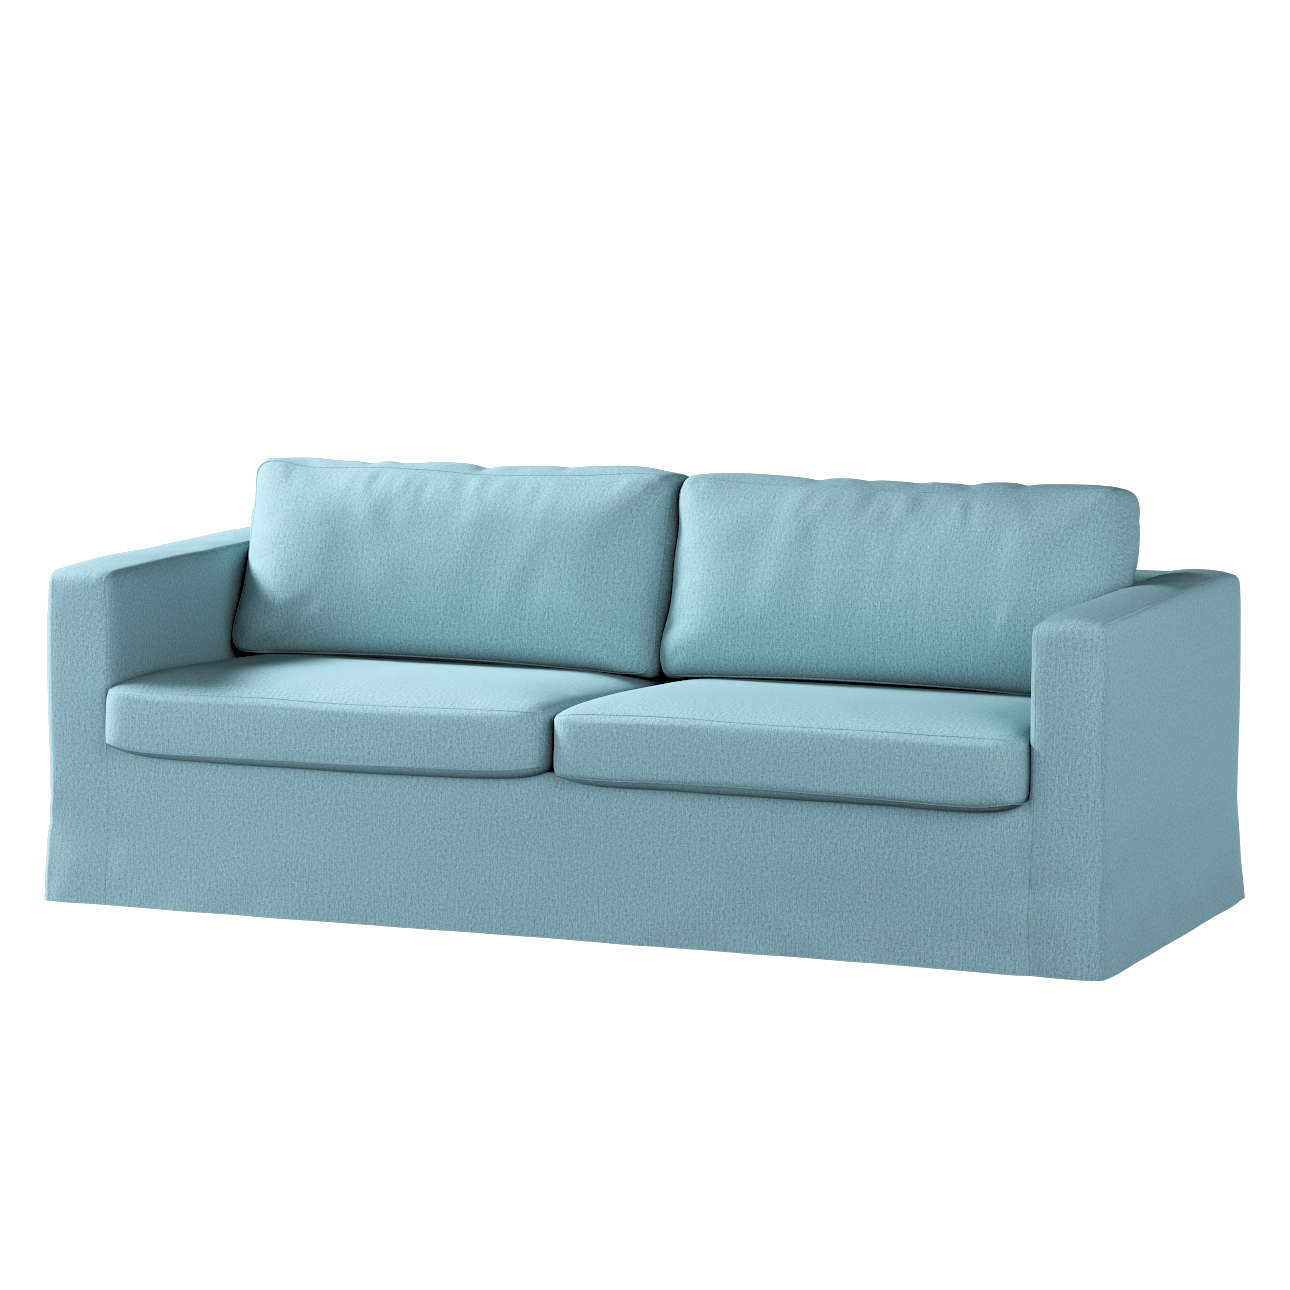 Bezug für Karlstad 3-Sitzer Sofa nicht ausklappbar, lang, blau, Bezug für S günstig online kaufen